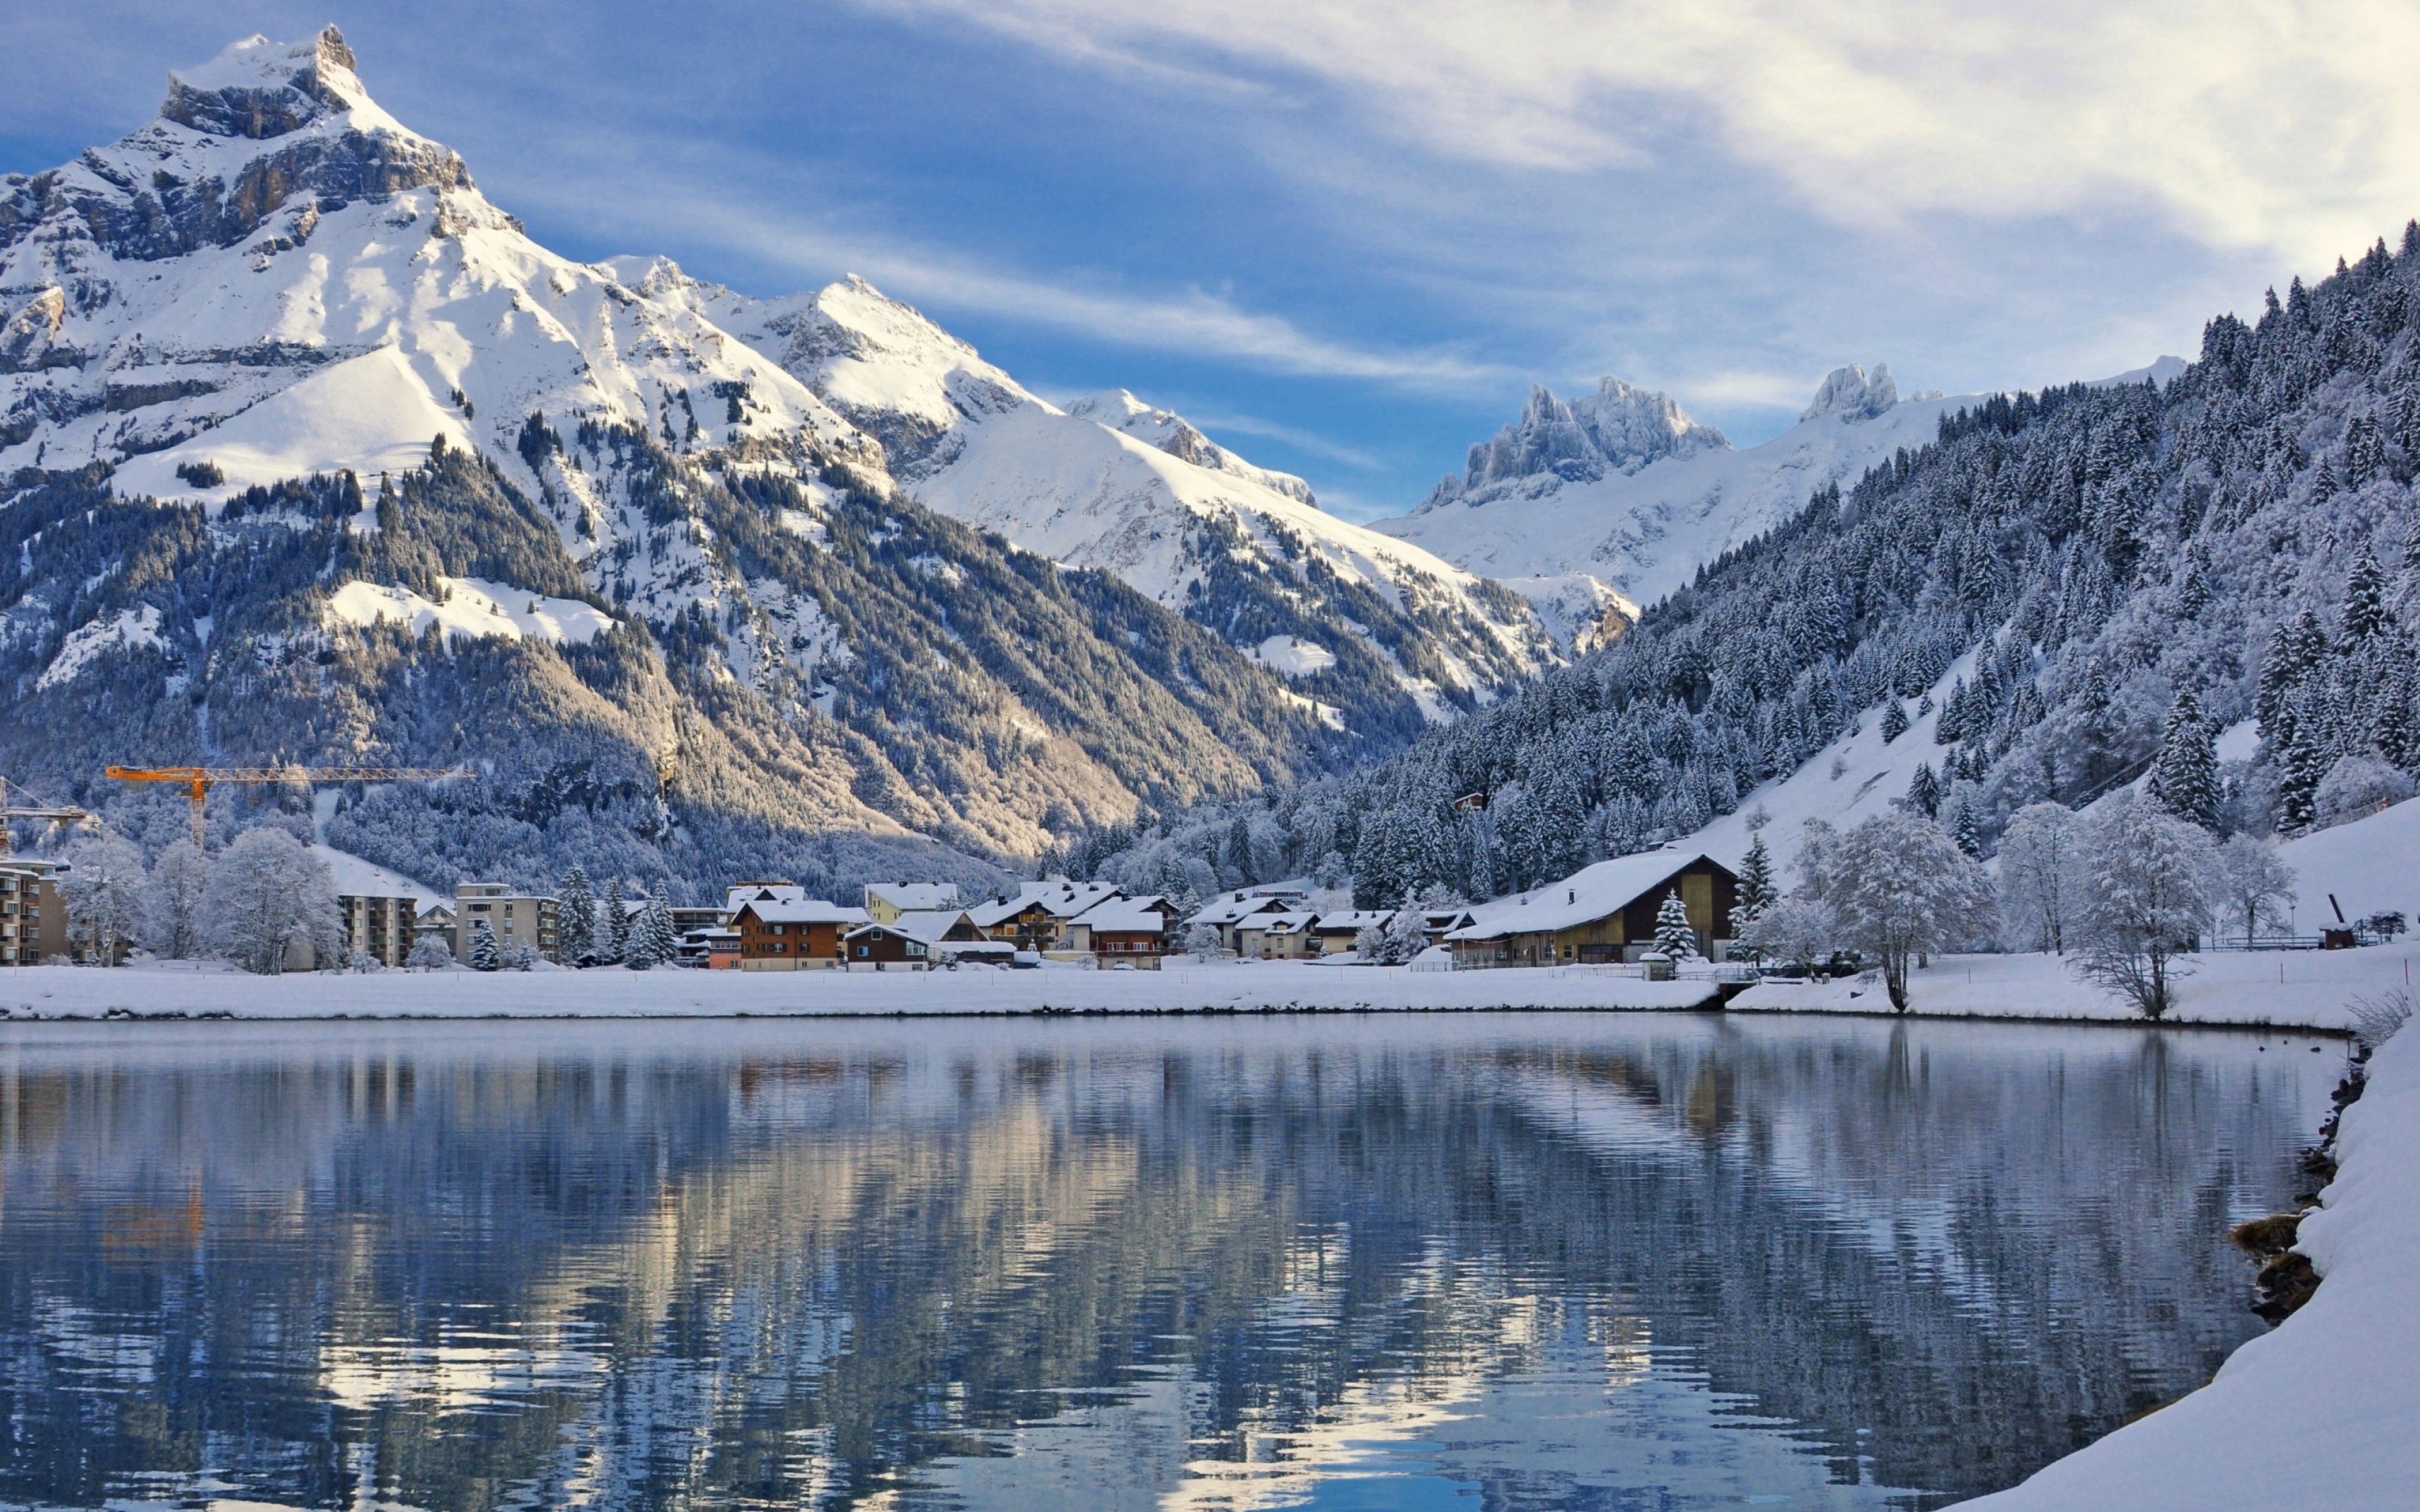 Швейцария маленькая страна. Энгельберг Швейцария. Озеро Зееальп, Швейцария. Энгельберг Швейцария зимой. Деревушка Энгельберг и гора Титлис.